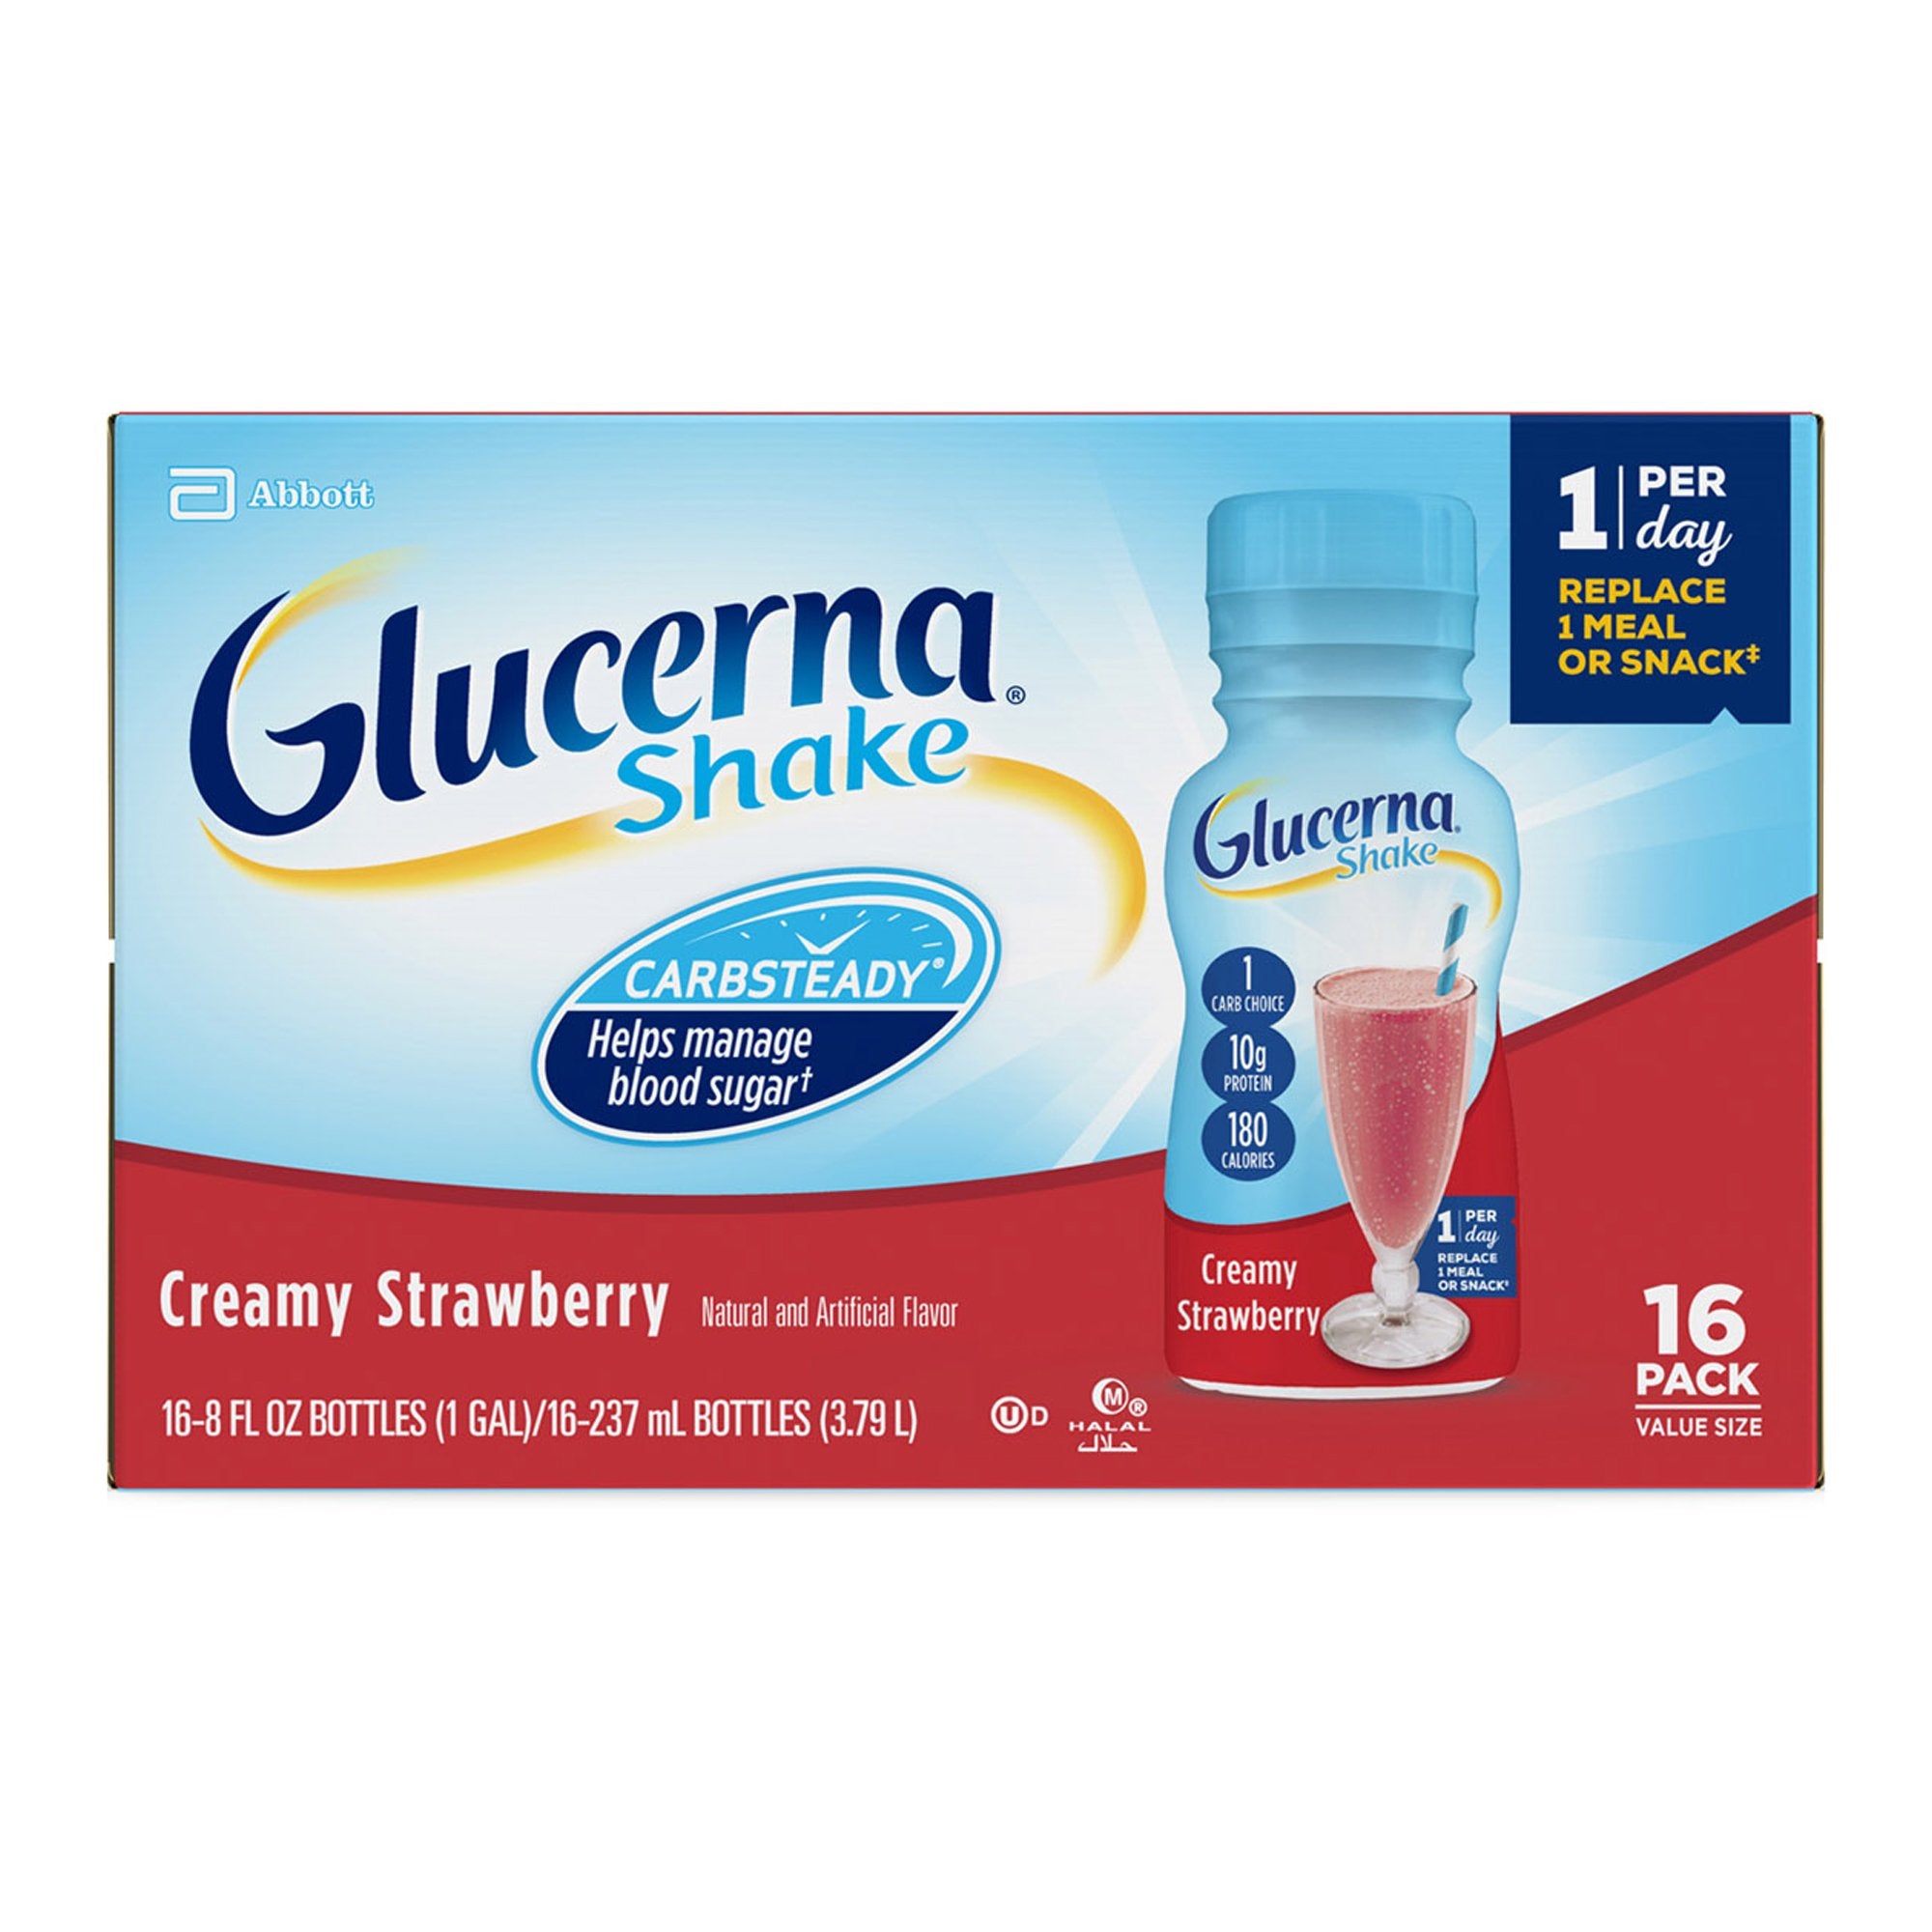 Glucerna Original Shake, Strawberry, 8 oz. - Diabetic Support Formula (24 Pack)